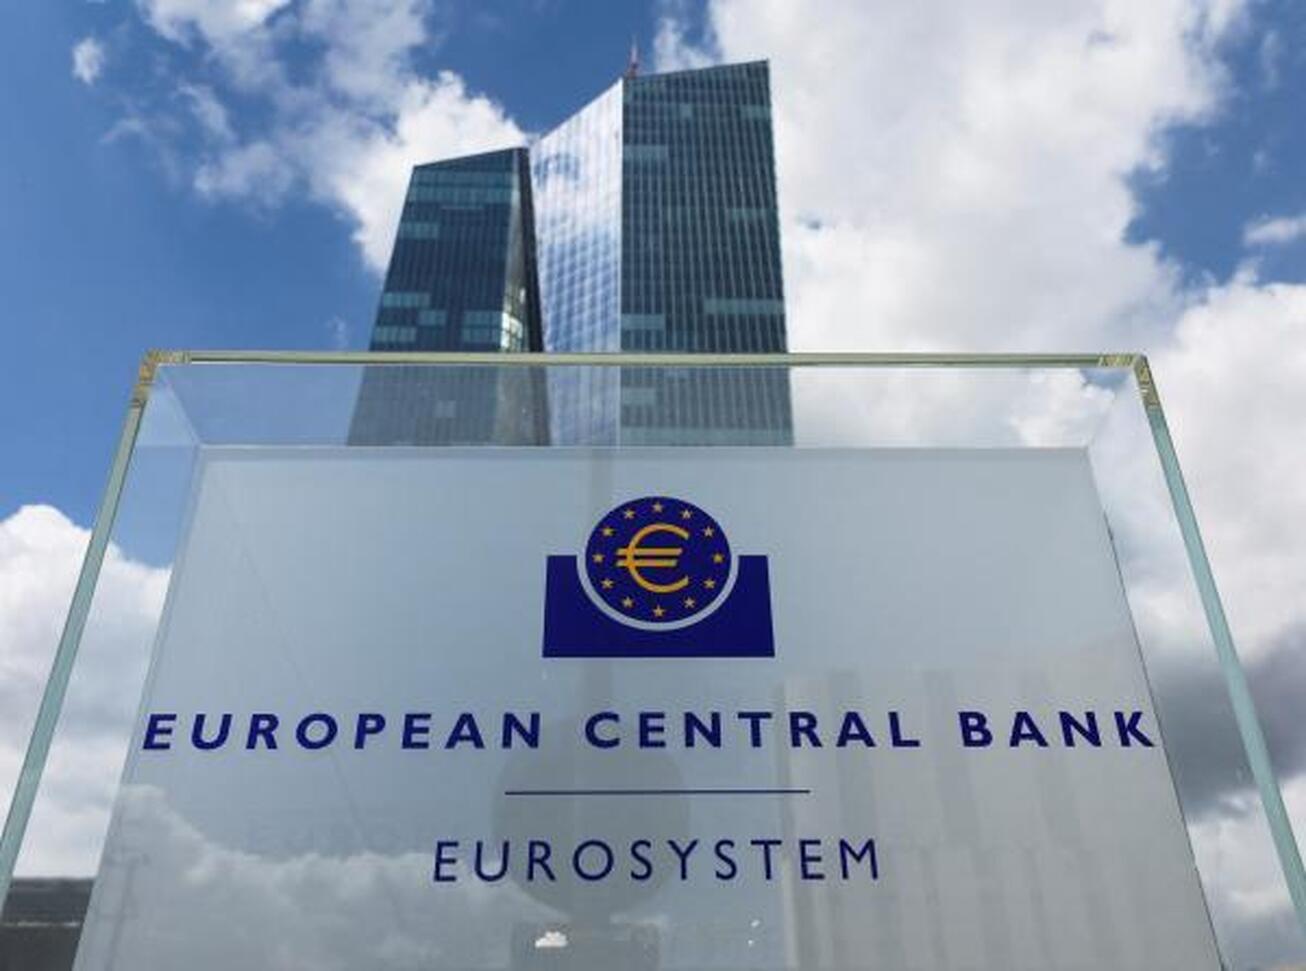 بررسی افزایش مجدد نرخ بهره در بانک مرکزی اروپا